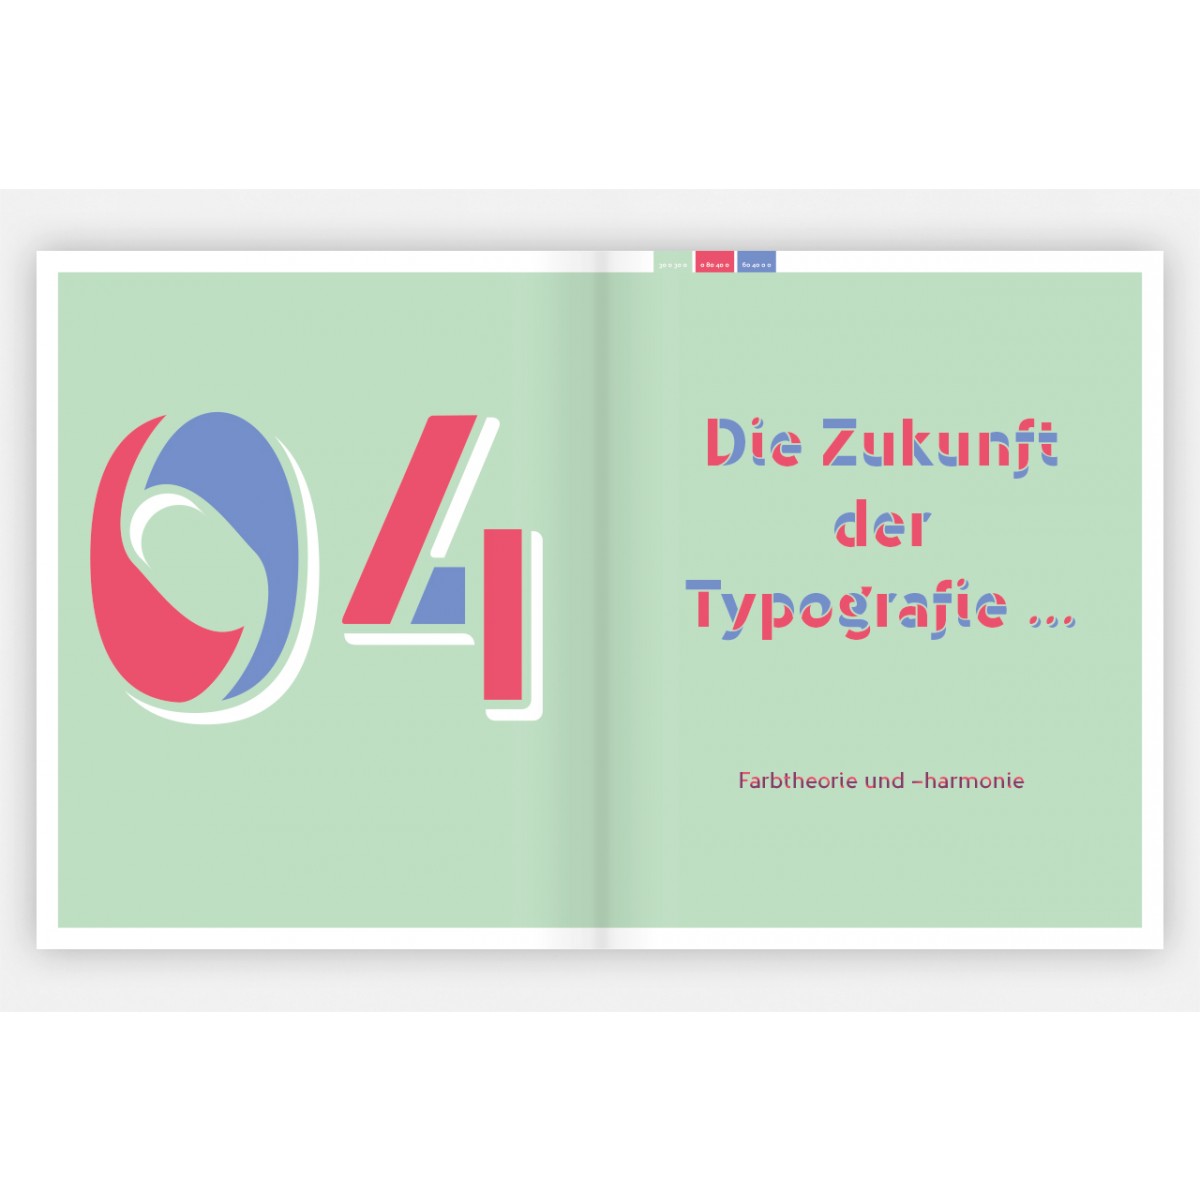 Mark van Wageningen	
Color and Type

Mehrfarbige Multi-Layer-Schriften
entwerfen und anwenden